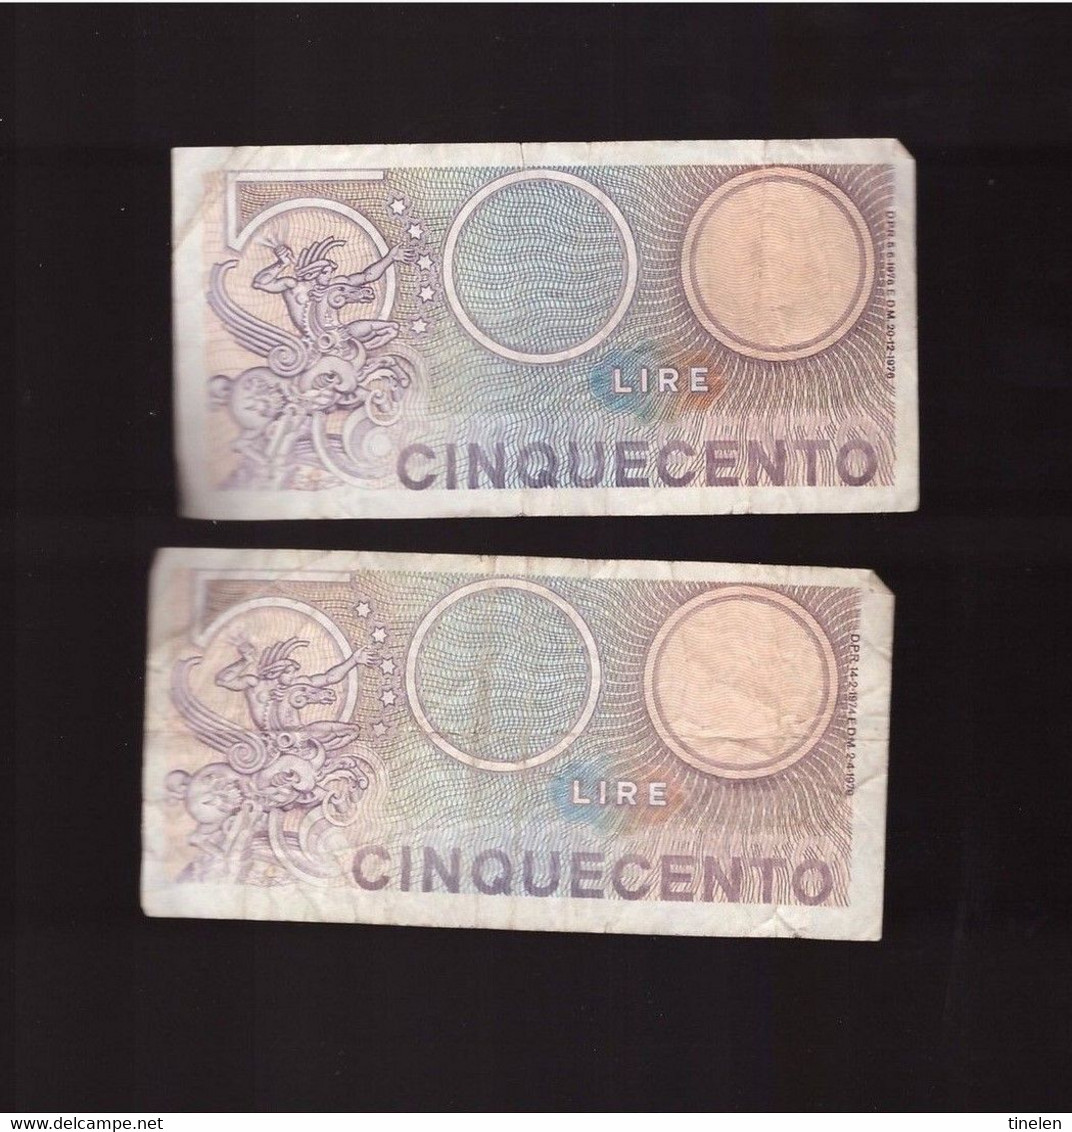 Italia - 2 Banconote Da L 500 Usate - 500 Lire